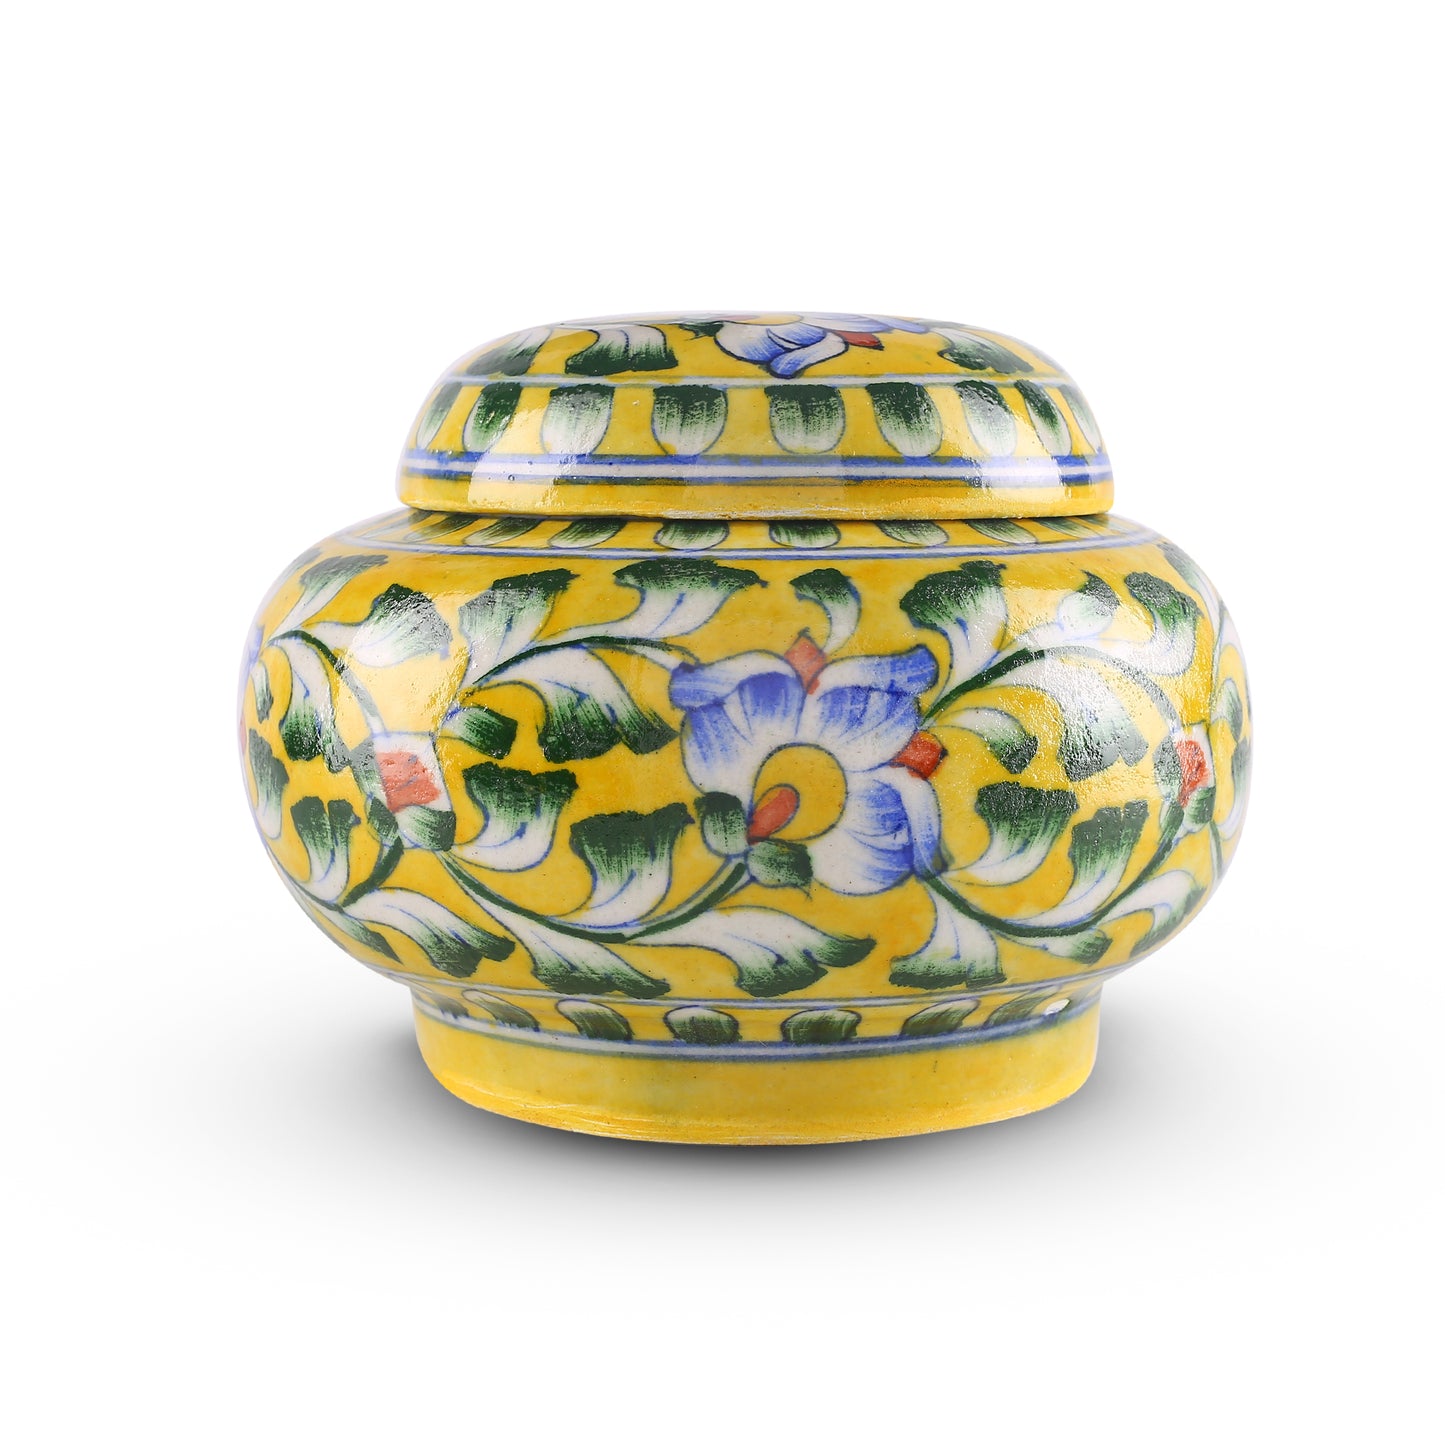 Blue Pottery Matki Jar - Yellow